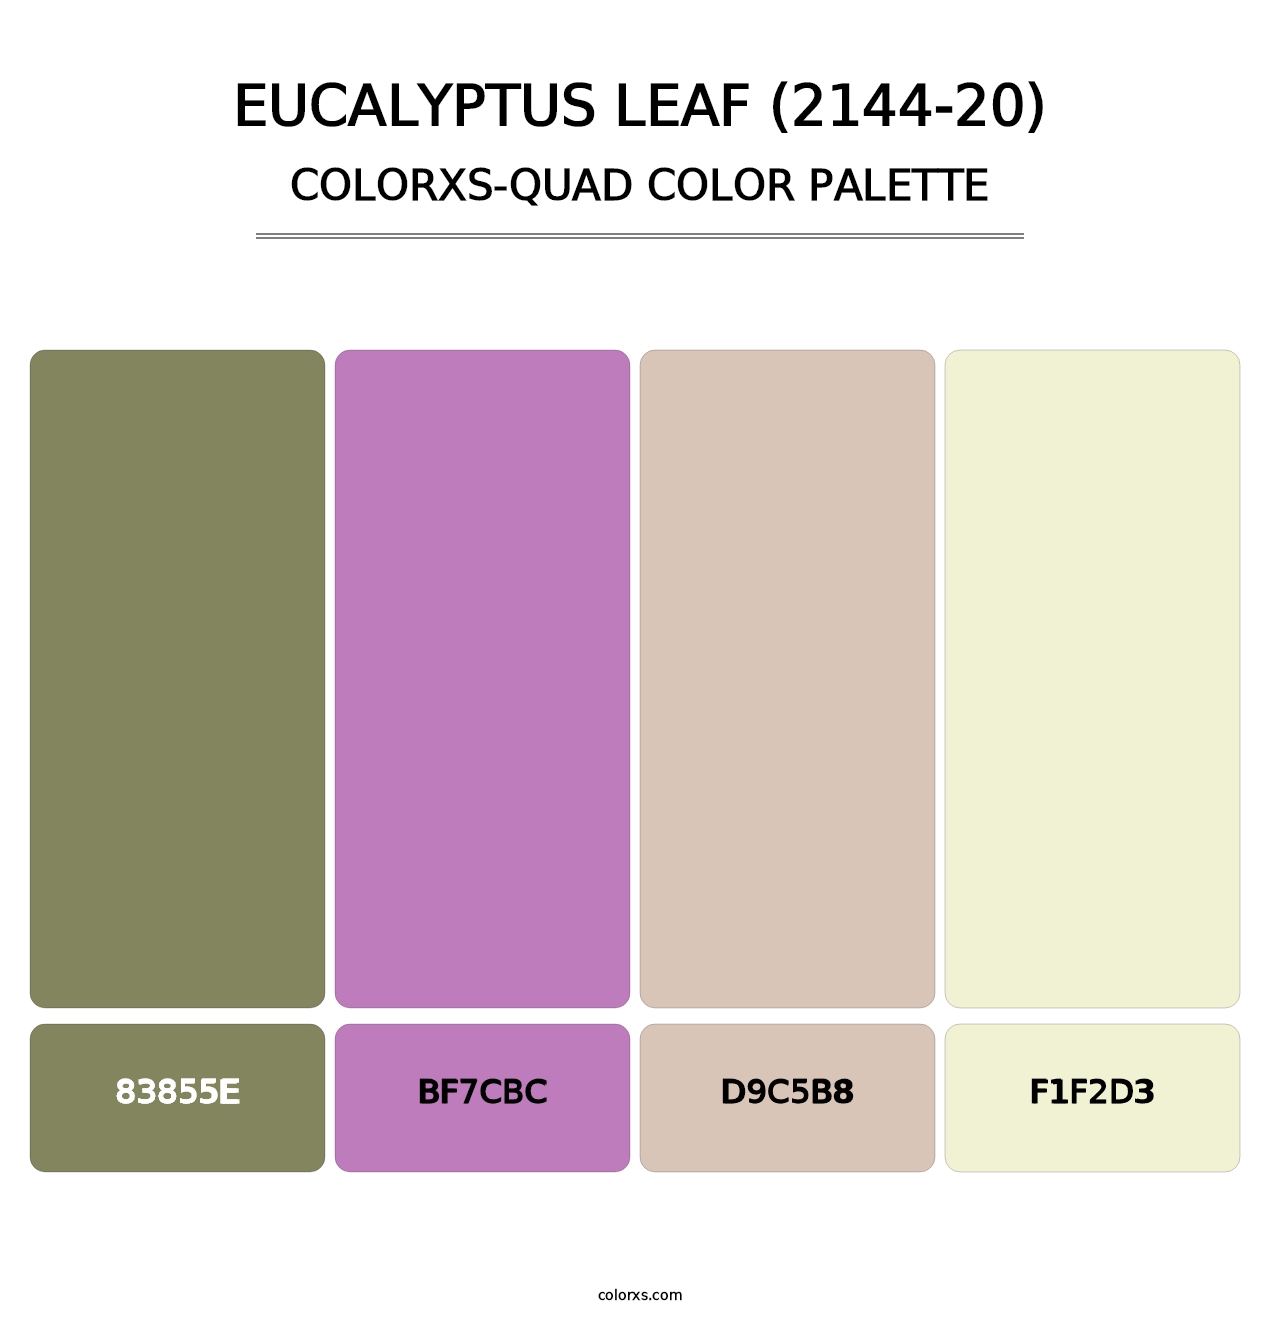 Eucalyptus Leaf (2144-20) - Colorxs Quad Palette